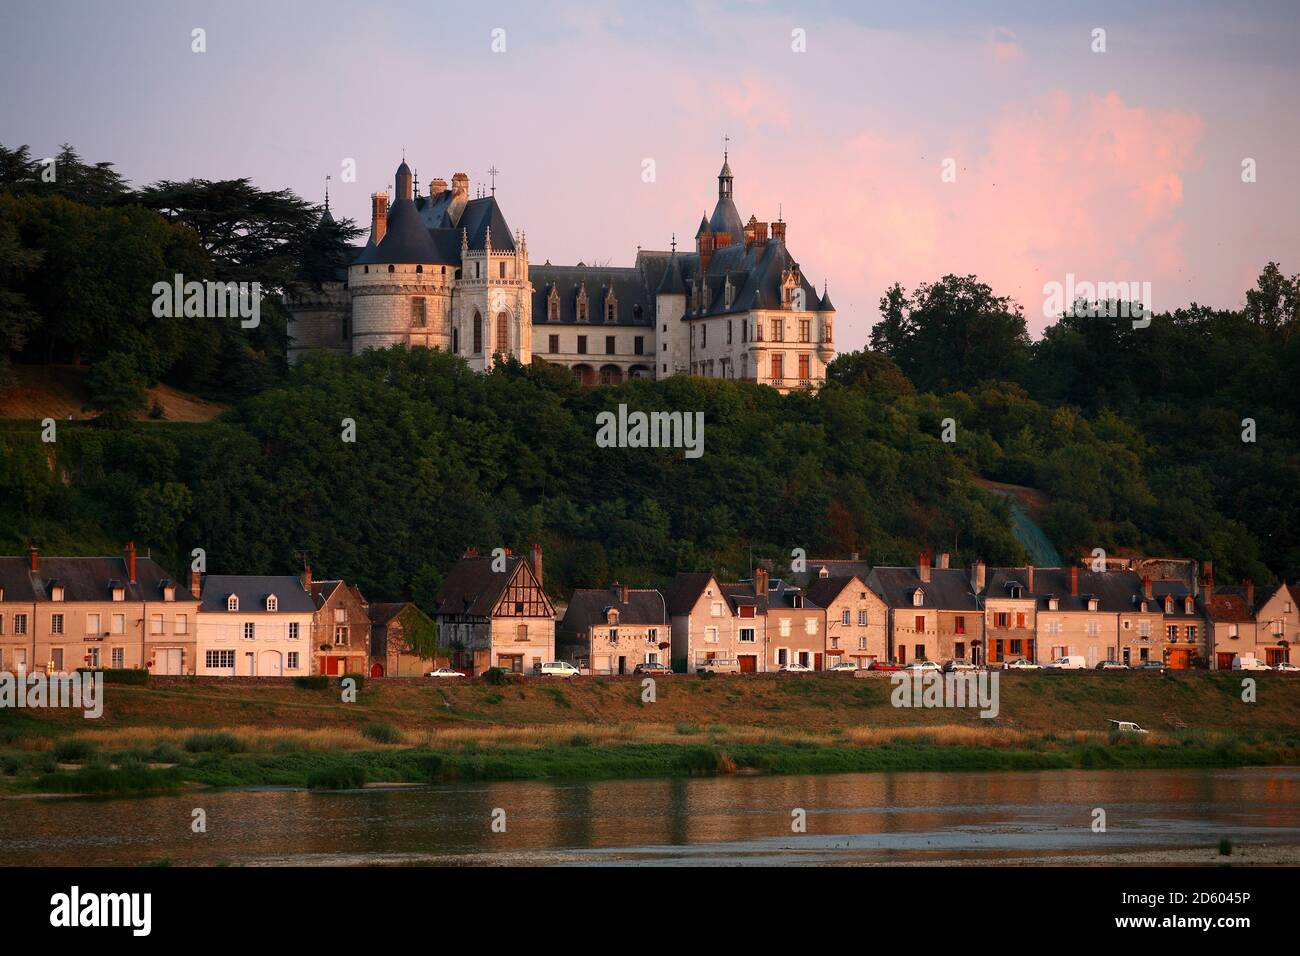 France, Chaumont-sur-Loire, view to Chateau de Chaumont Stock Photo